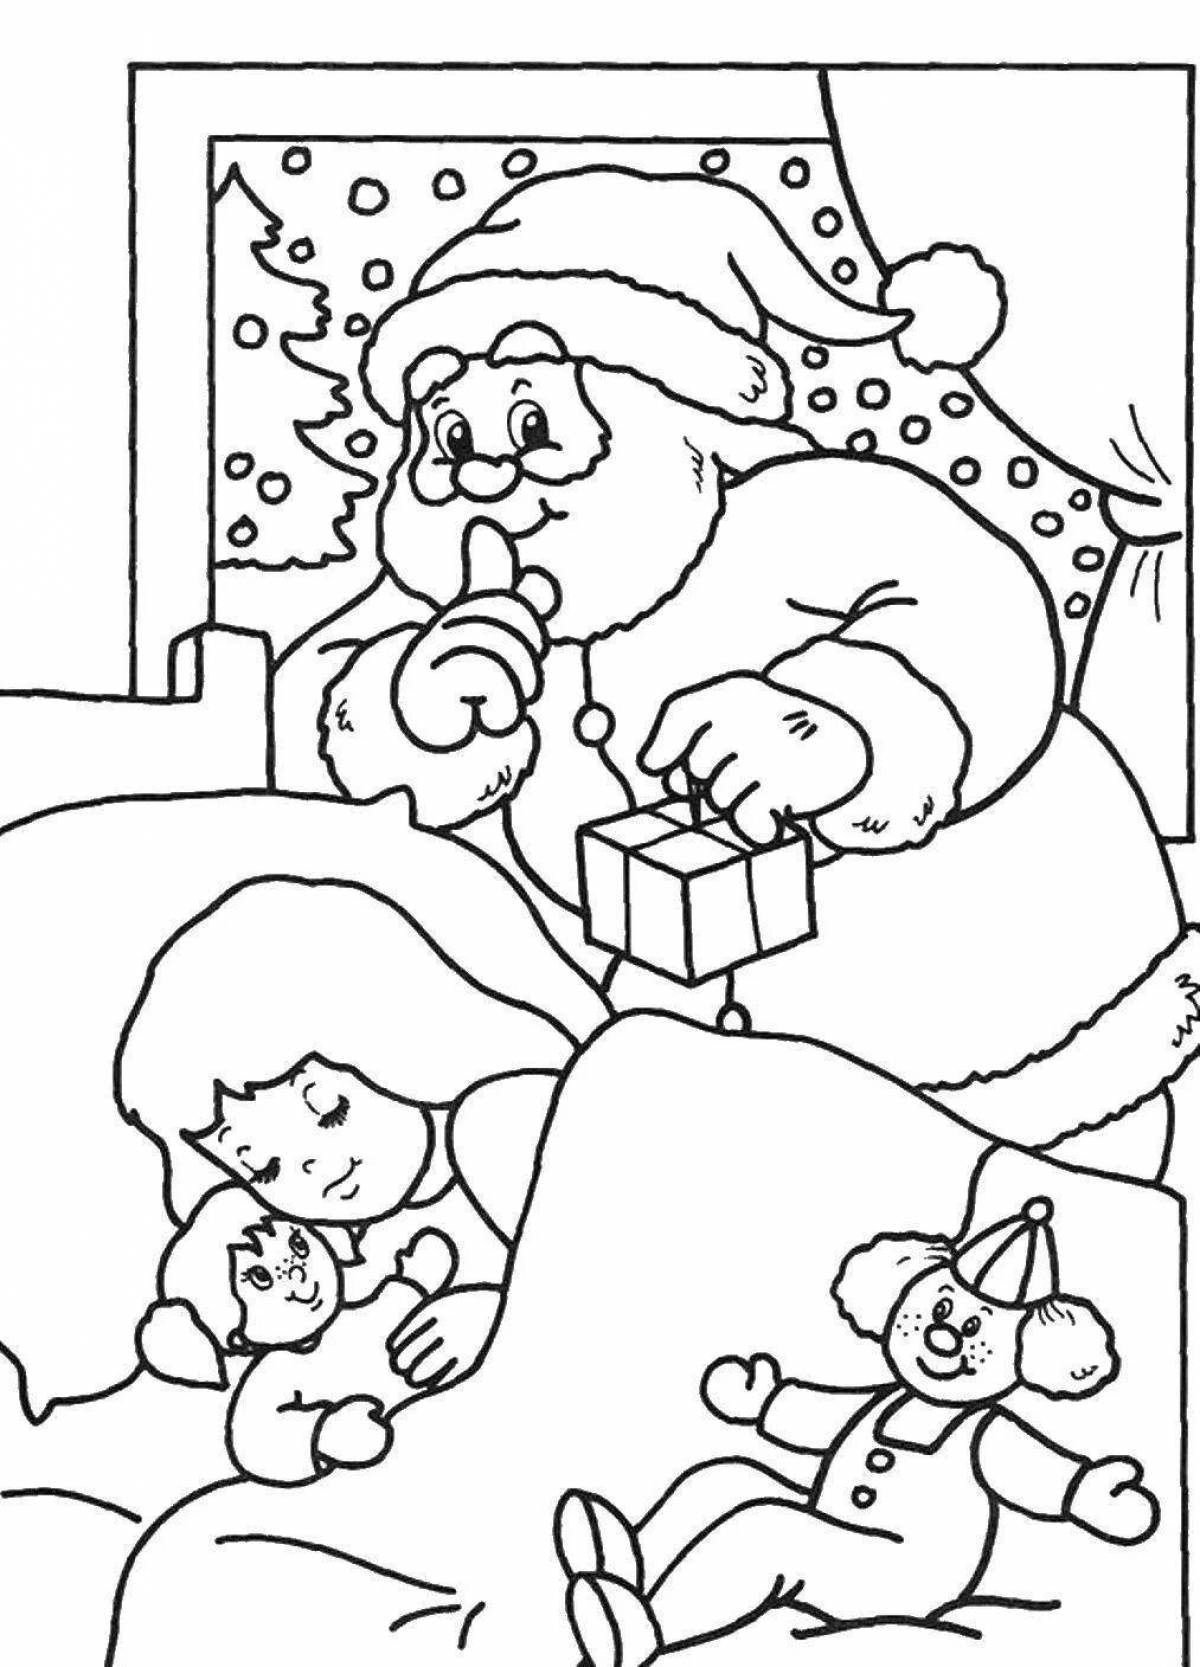 Joyful santa claus coloring book for girls